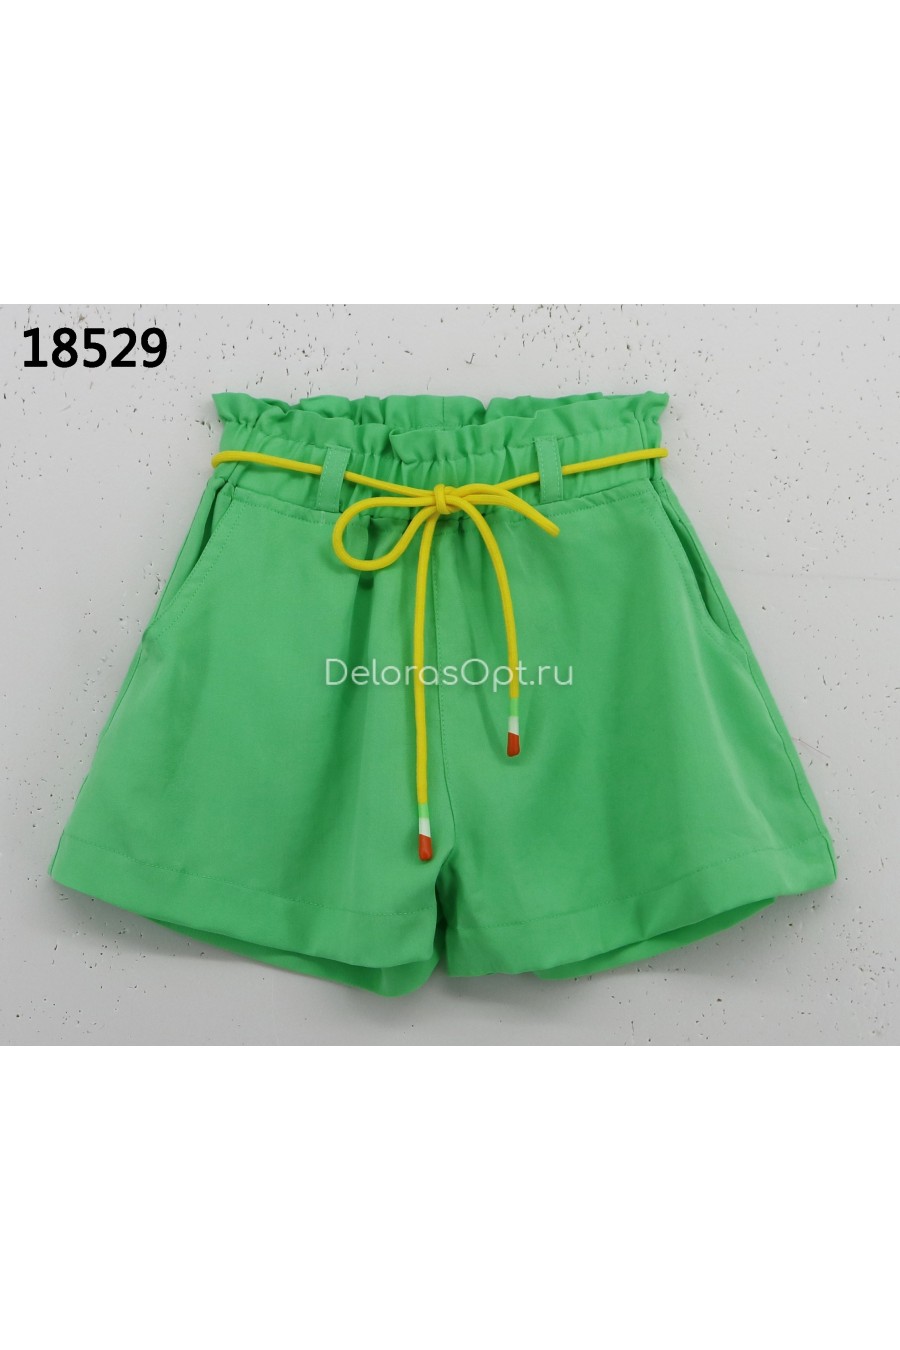 модная детская одежда 18529 шорты для девочки 